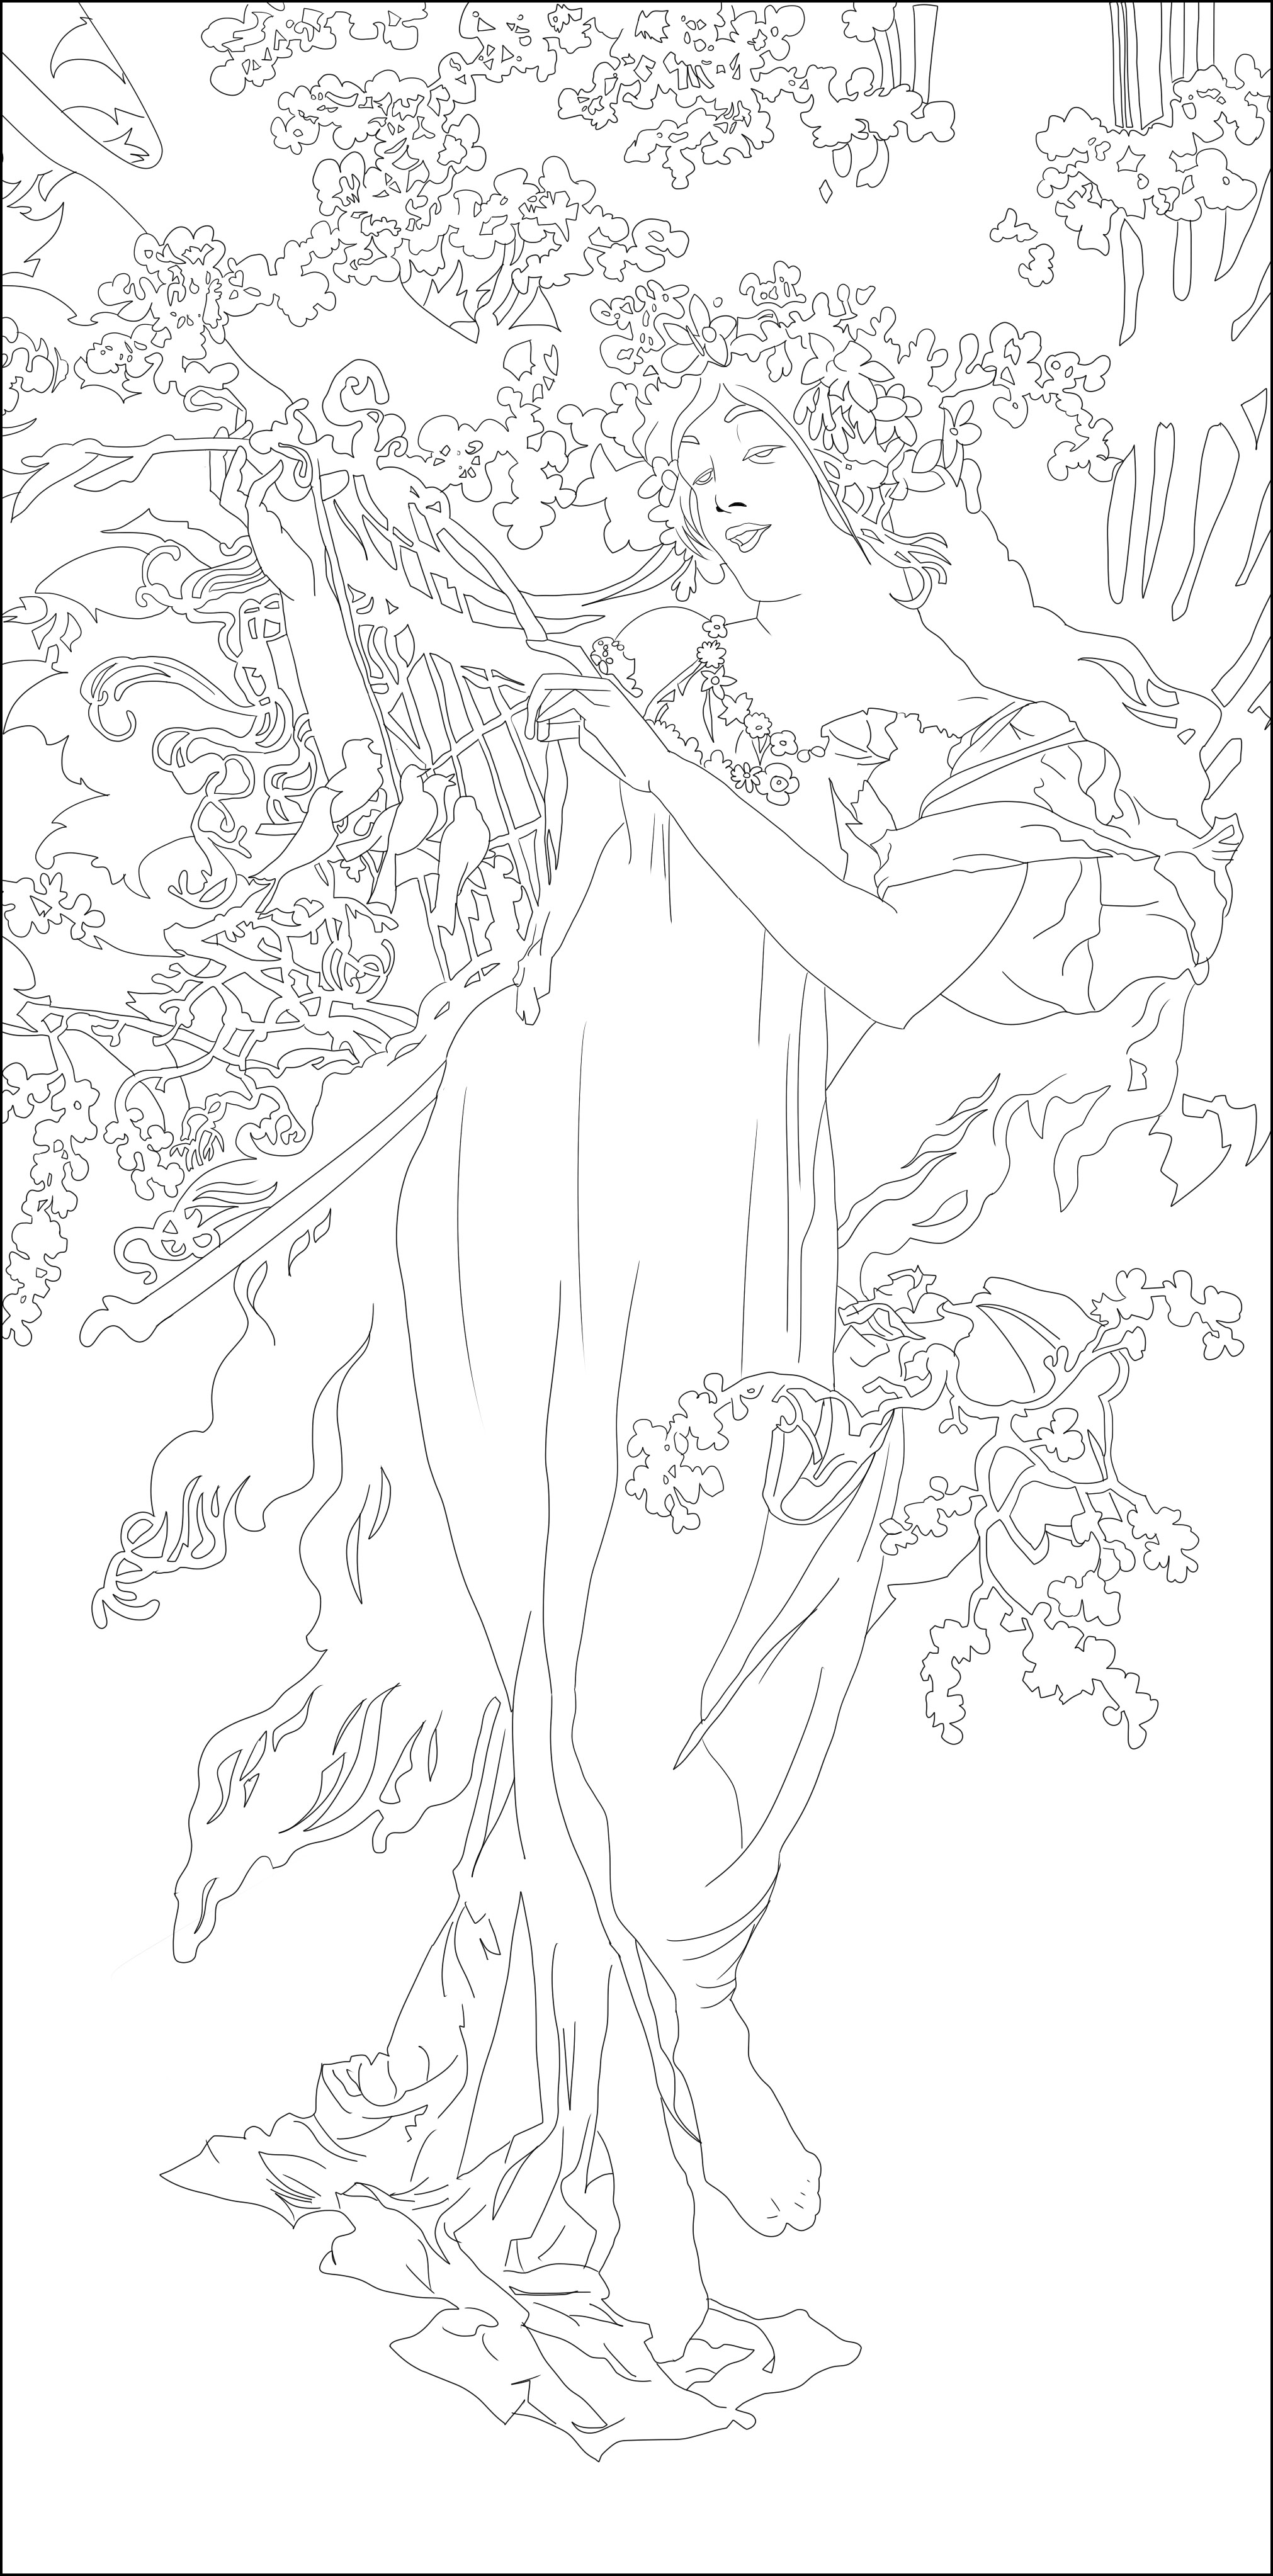 Malvorlage inspiriert von 'Printemps' von Alfons Mucha. Eine elegante Frau vom Anfang des Jahrhunderts, allein, aber umgeben von schöner Vegetation